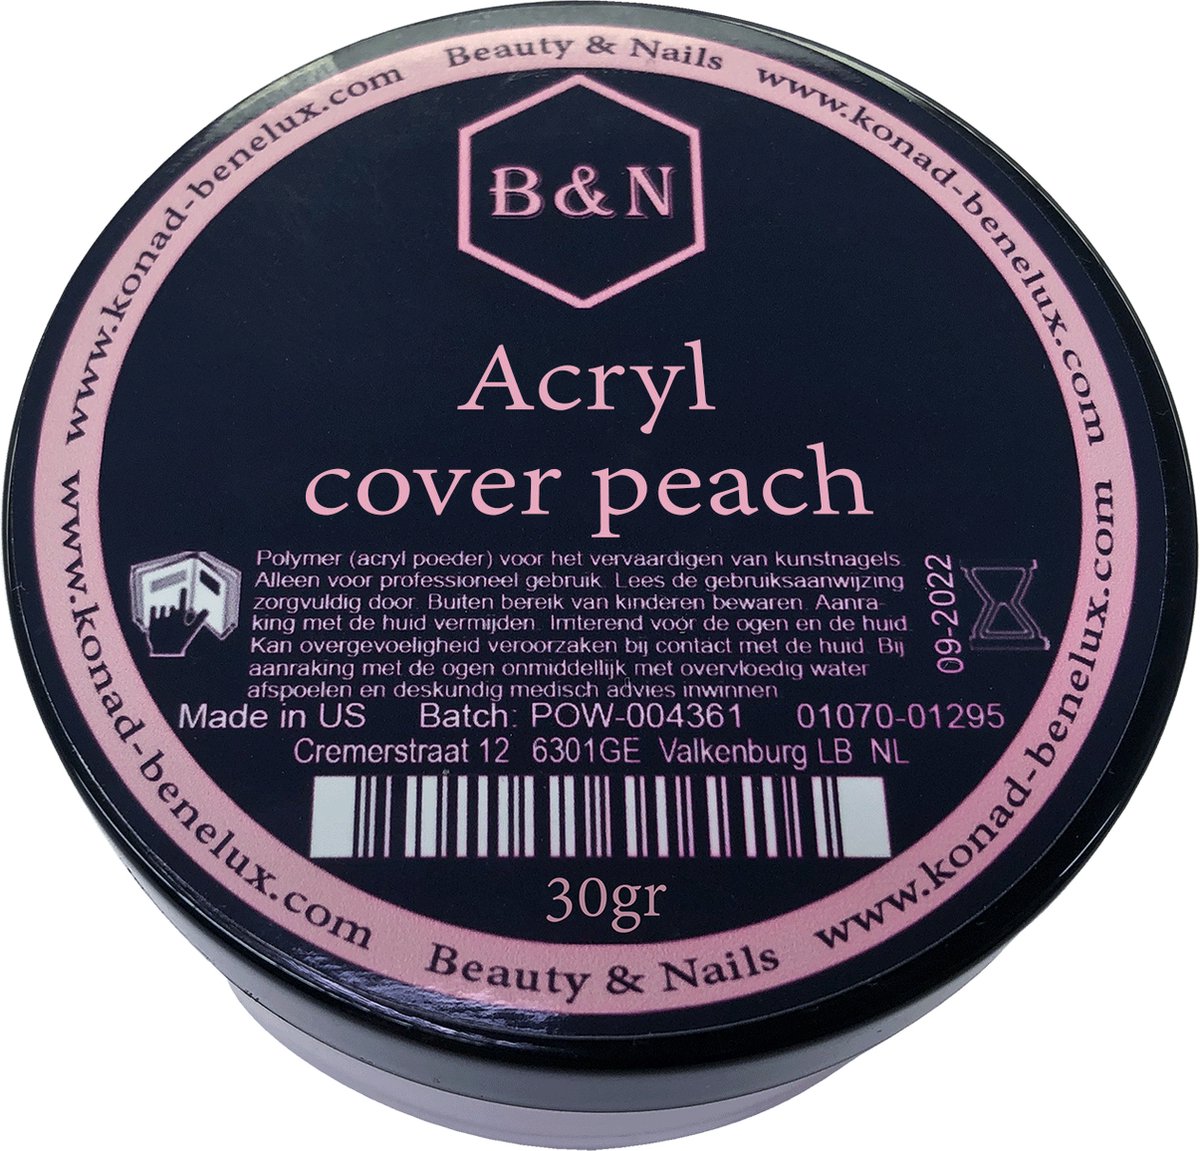 Acryl - cover peach - 30 gr | B&N - acrylpoeder - VEGAN - acrylpoeder